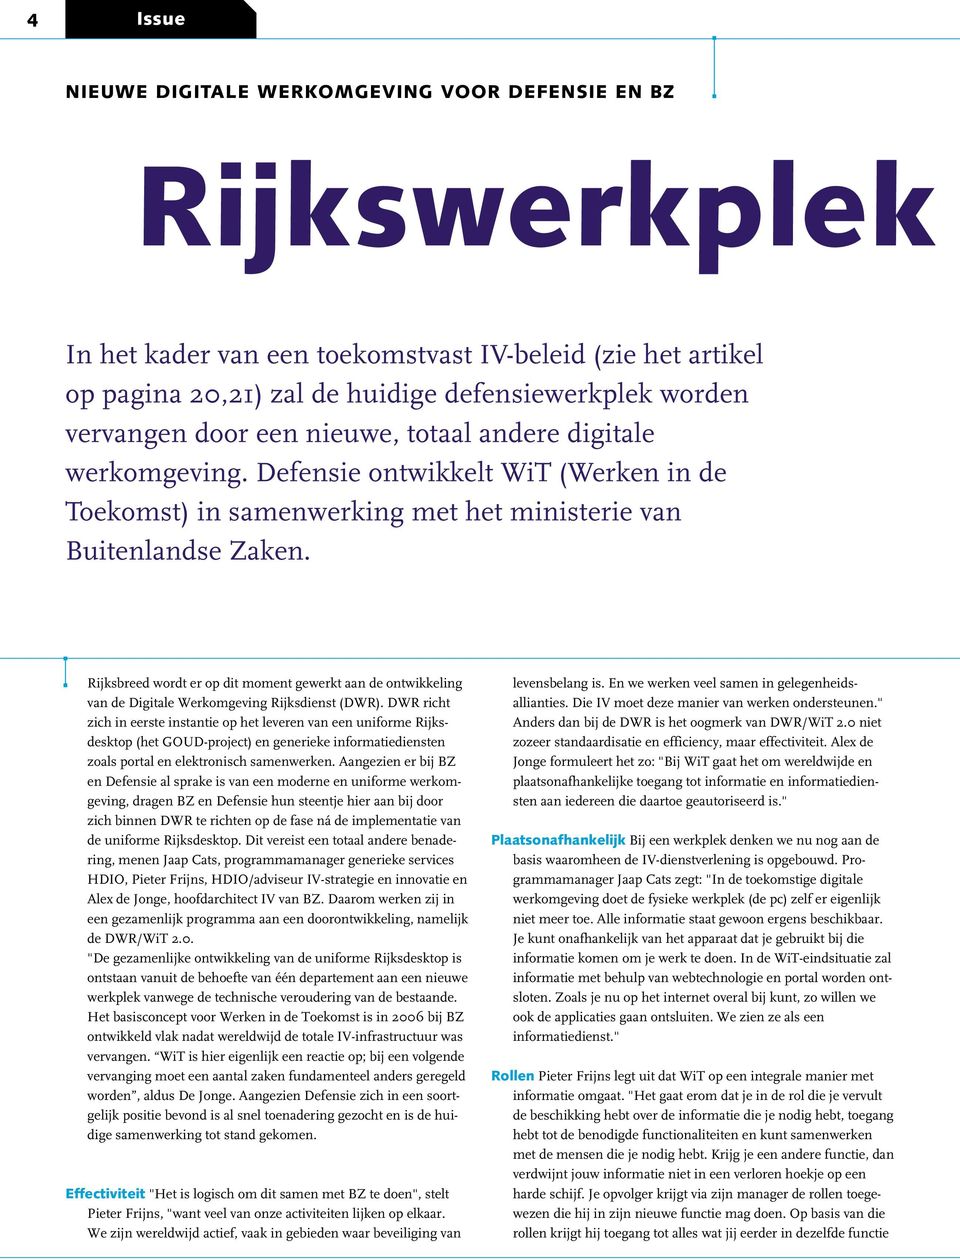 Rijksbreed wordt er op dit moment gewerkt aan de ontwikkeling van de Digitale Werkomgeving Rijksdienst (DWR).